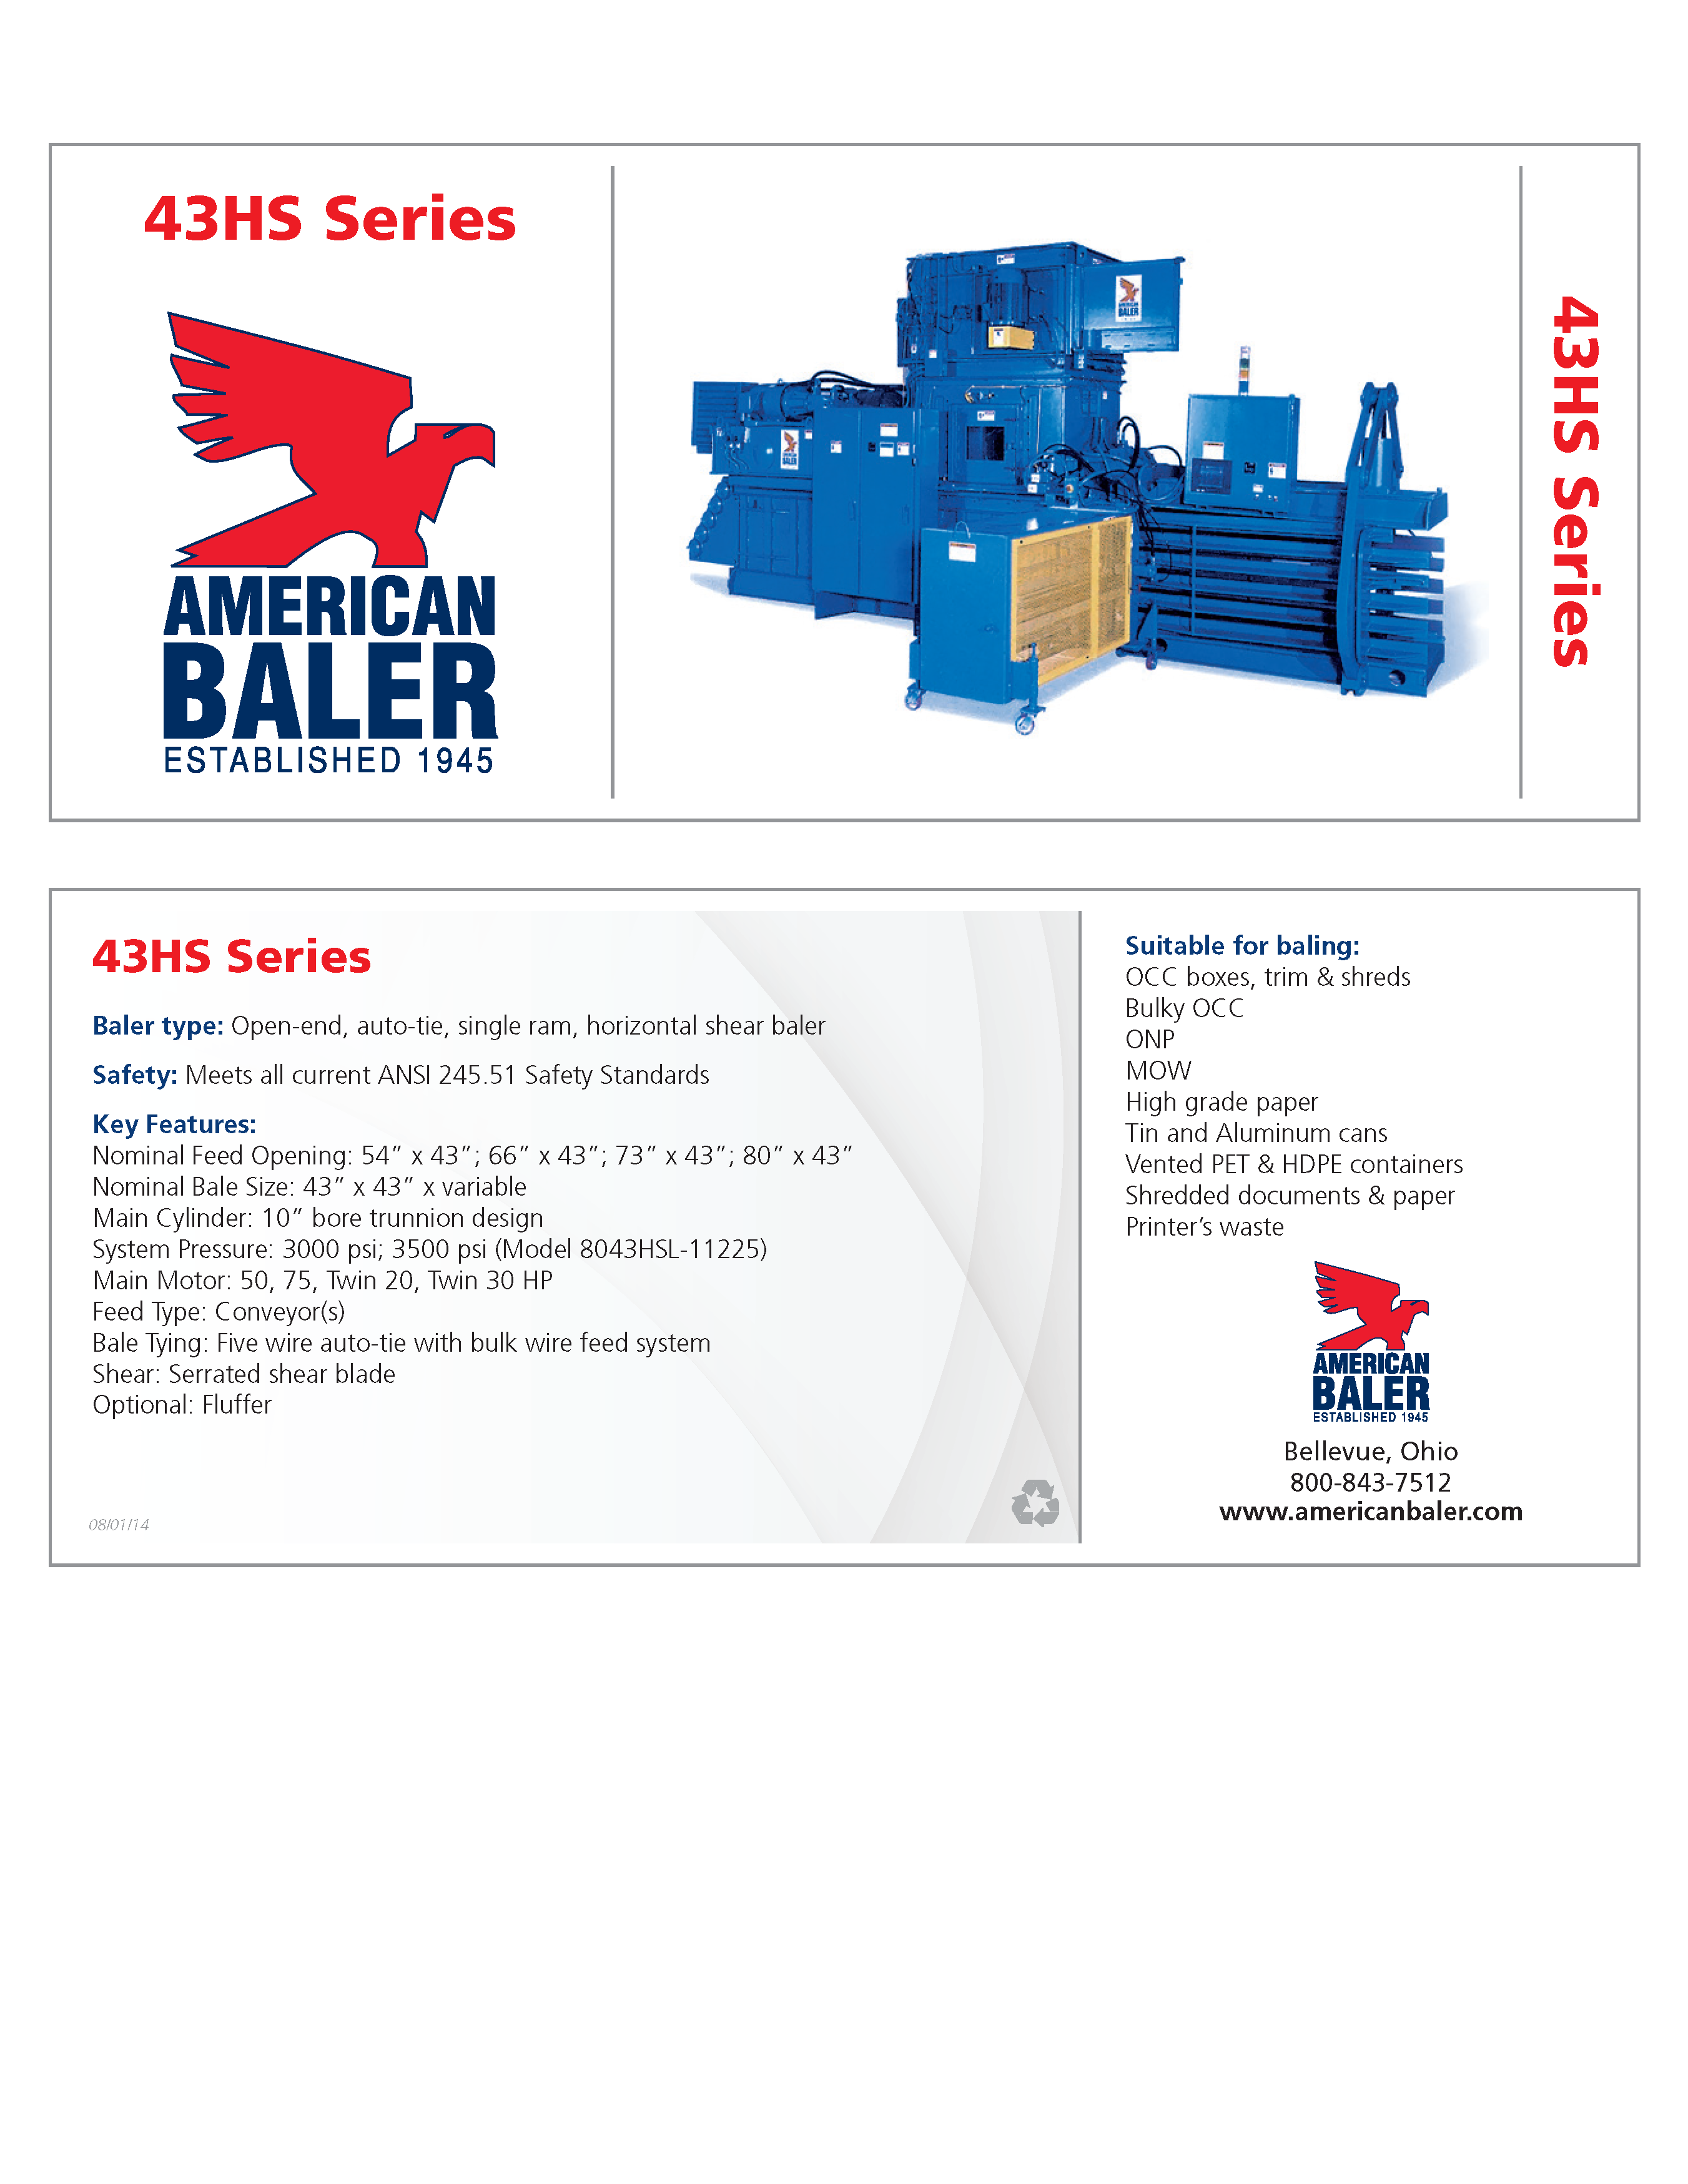 Conozca más de las compactadoras Serie 43HS en el folleto de American Baler.